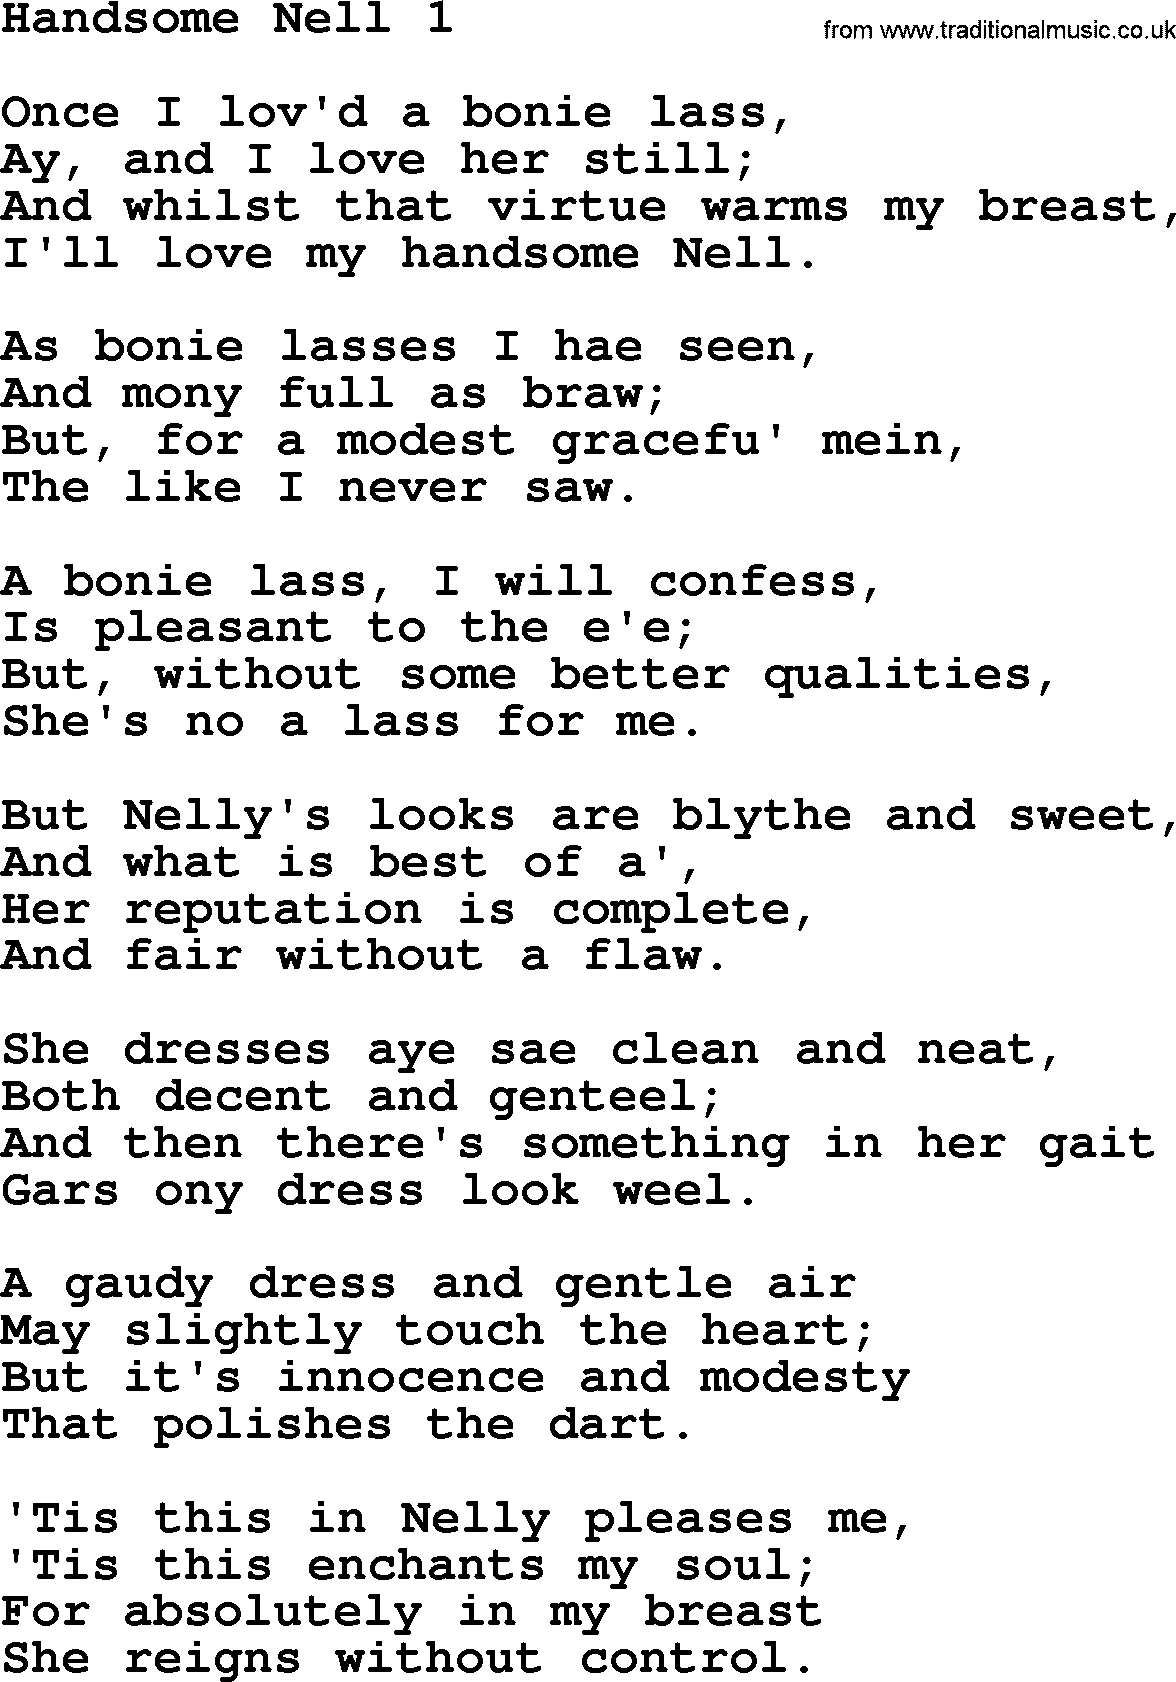 Robert Burns Songs & Lyrics: Handsome Nell 1